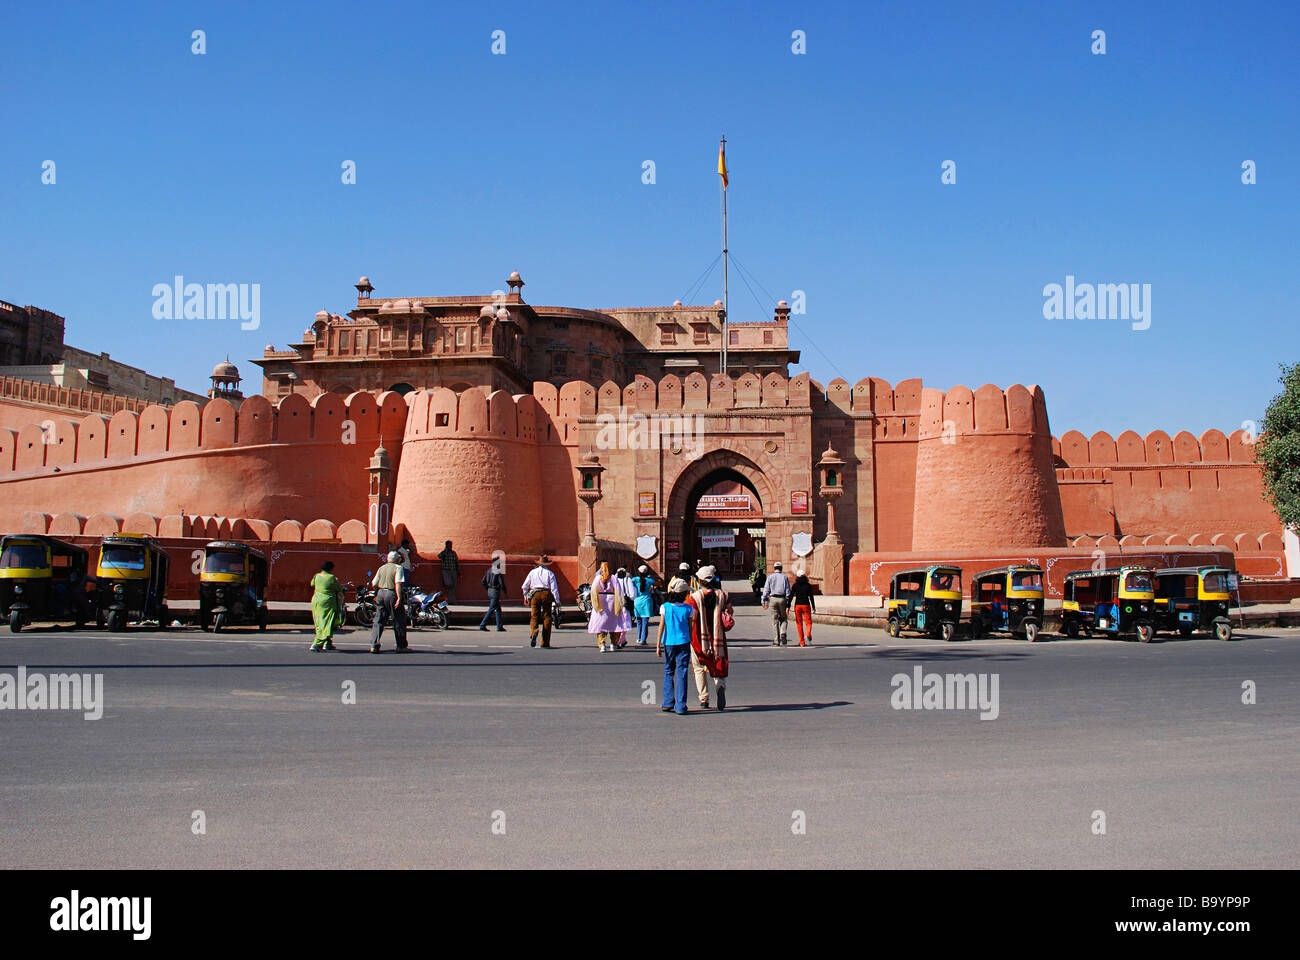 Junagarh Fort built by Maharaja Rai Singhji in 1588, Bikaner, Rajasthan State, India. Stock Photo